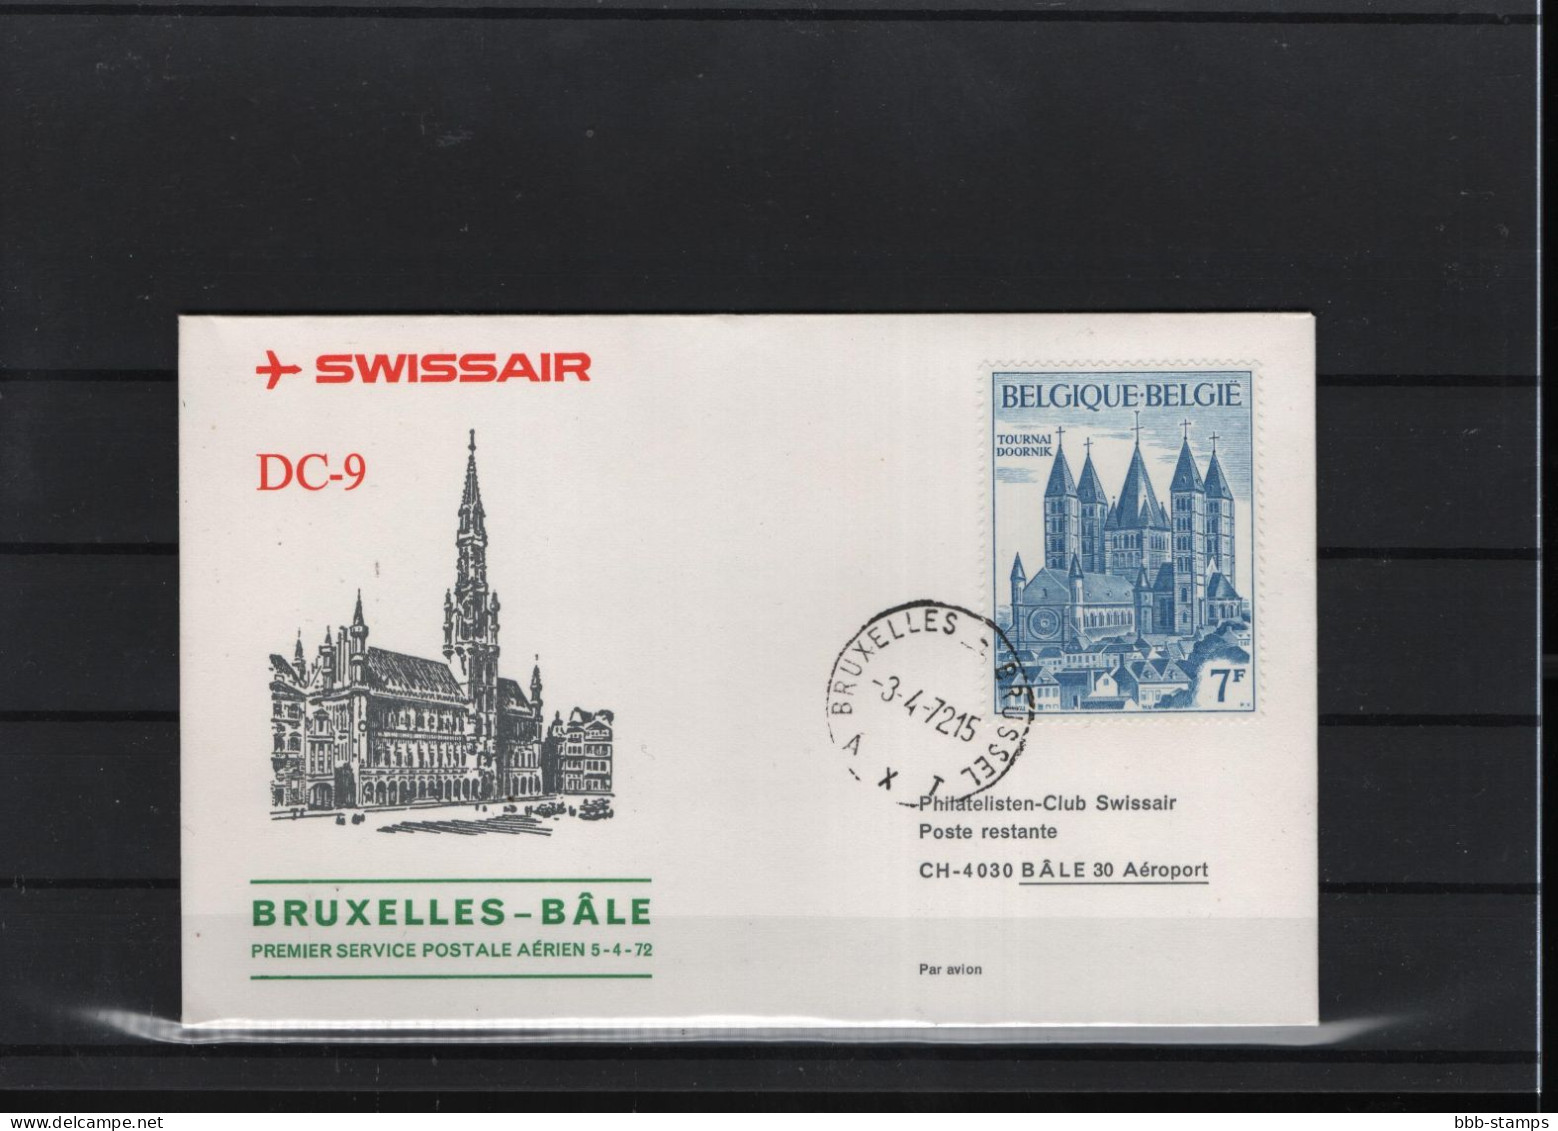 Schweiz Luftpost FFC Swissair  3.4.1972 Brussel - Basel - Primeros Vuelos